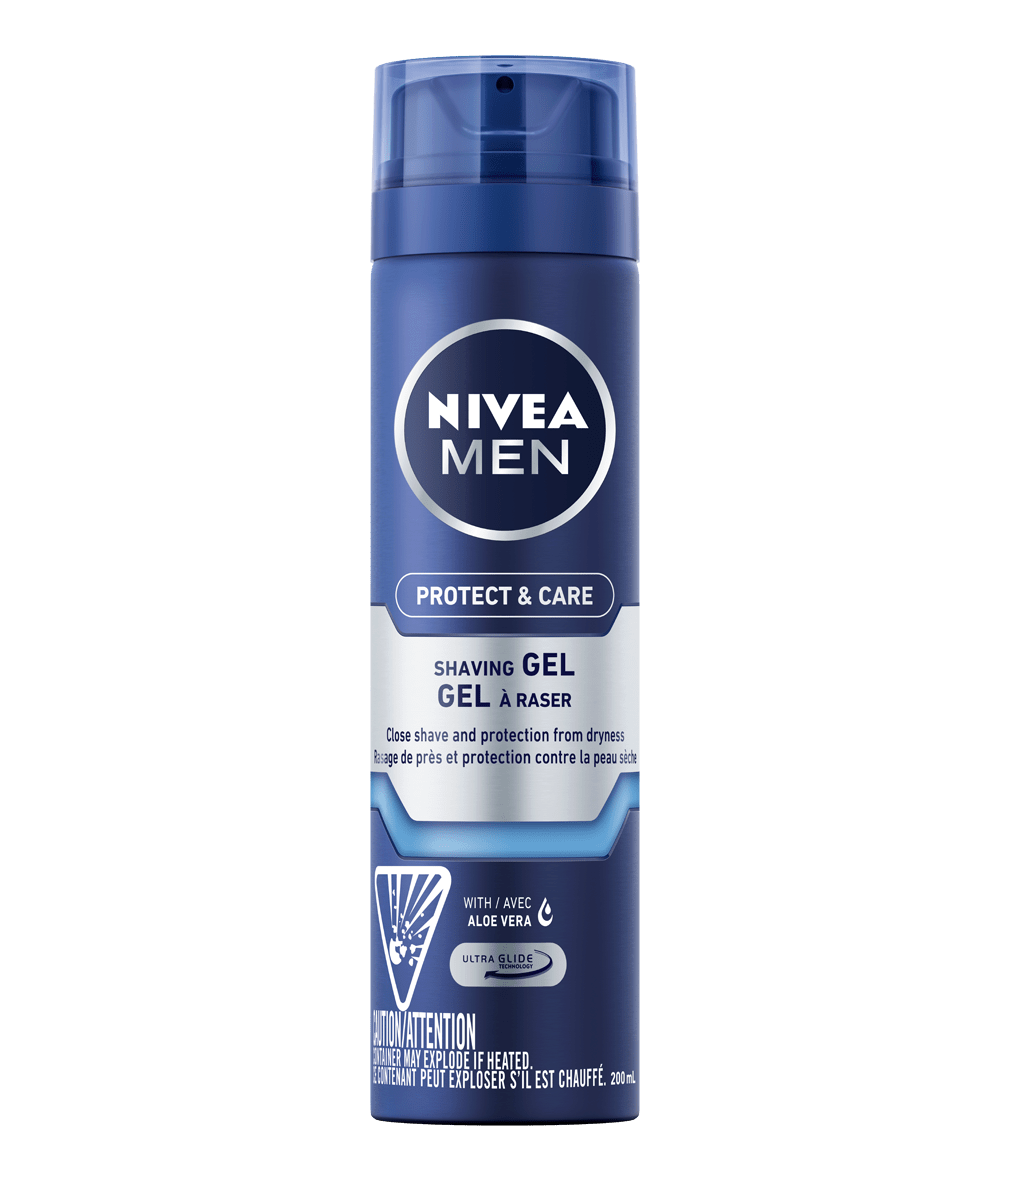 Protect & Care Moisturizing Shaving Gel, NIVEA Men